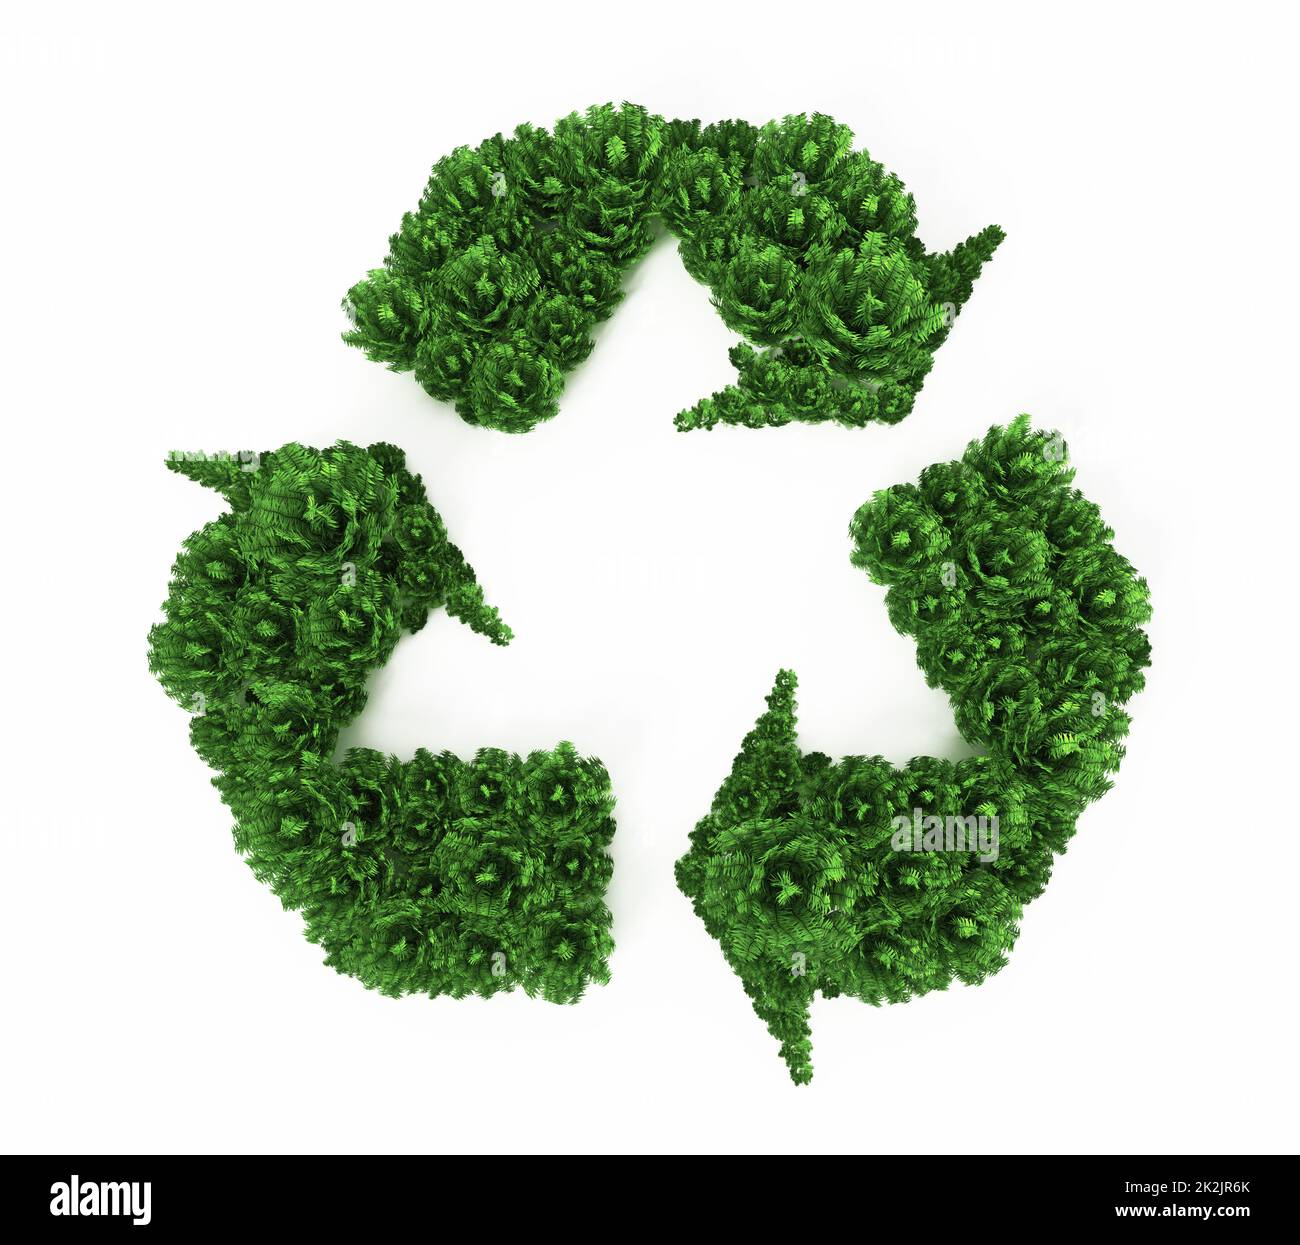 Symbole de recyclage des bagues vertes. 3D illustration Banque D'Images